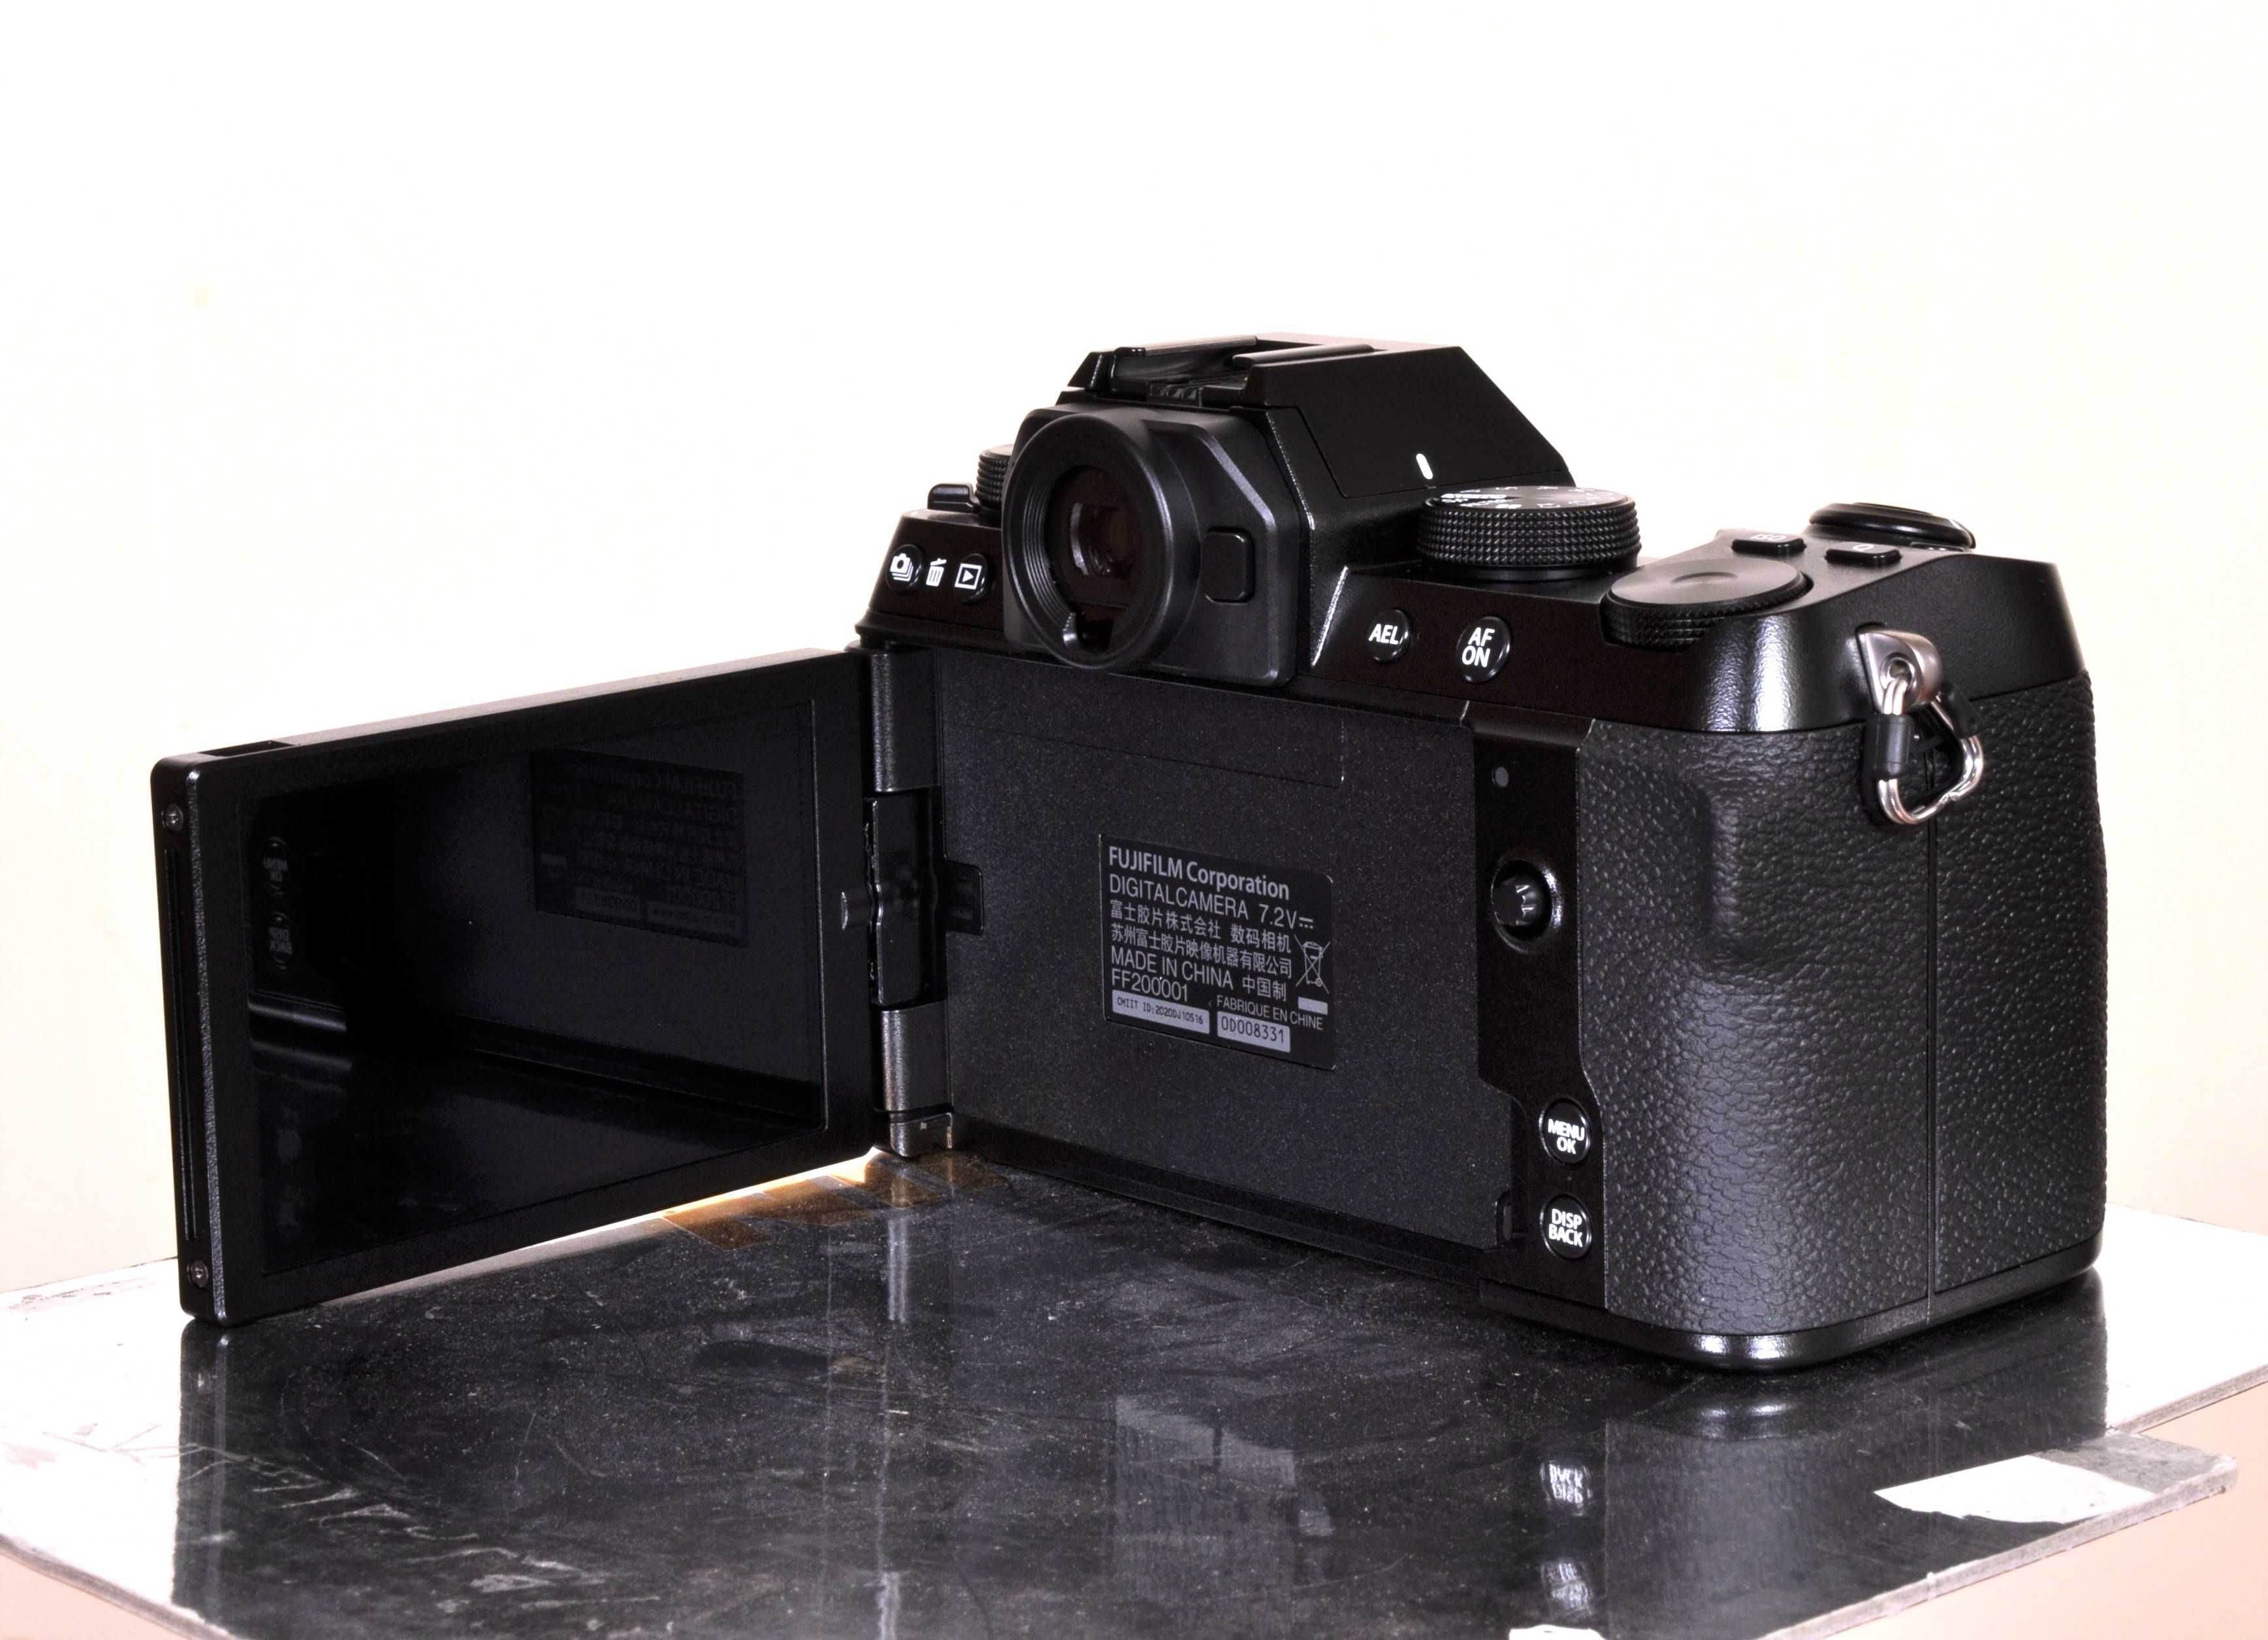 Fujifilm X-S10, NOVA + Bateria suplente. Fatura e garantia 3 anos